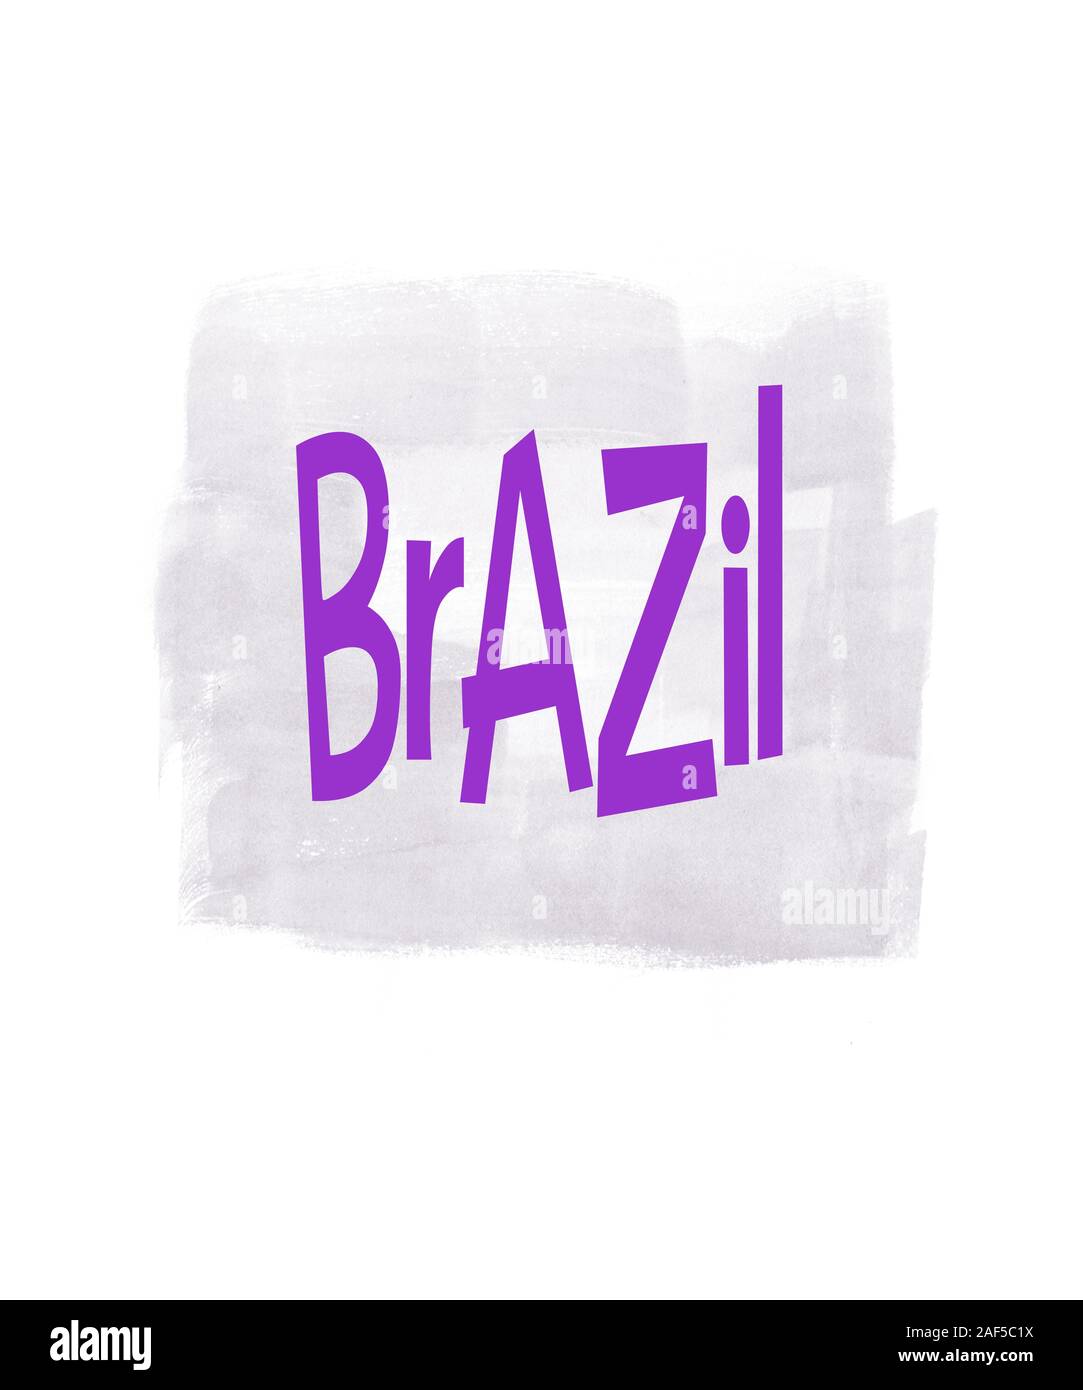 Il Brasile parola in viola con acquarello corsa di vernice in una luce viola di toni di grigio. Ottimo per il business, viaggi o altri concetti di questo paese Foto Stock